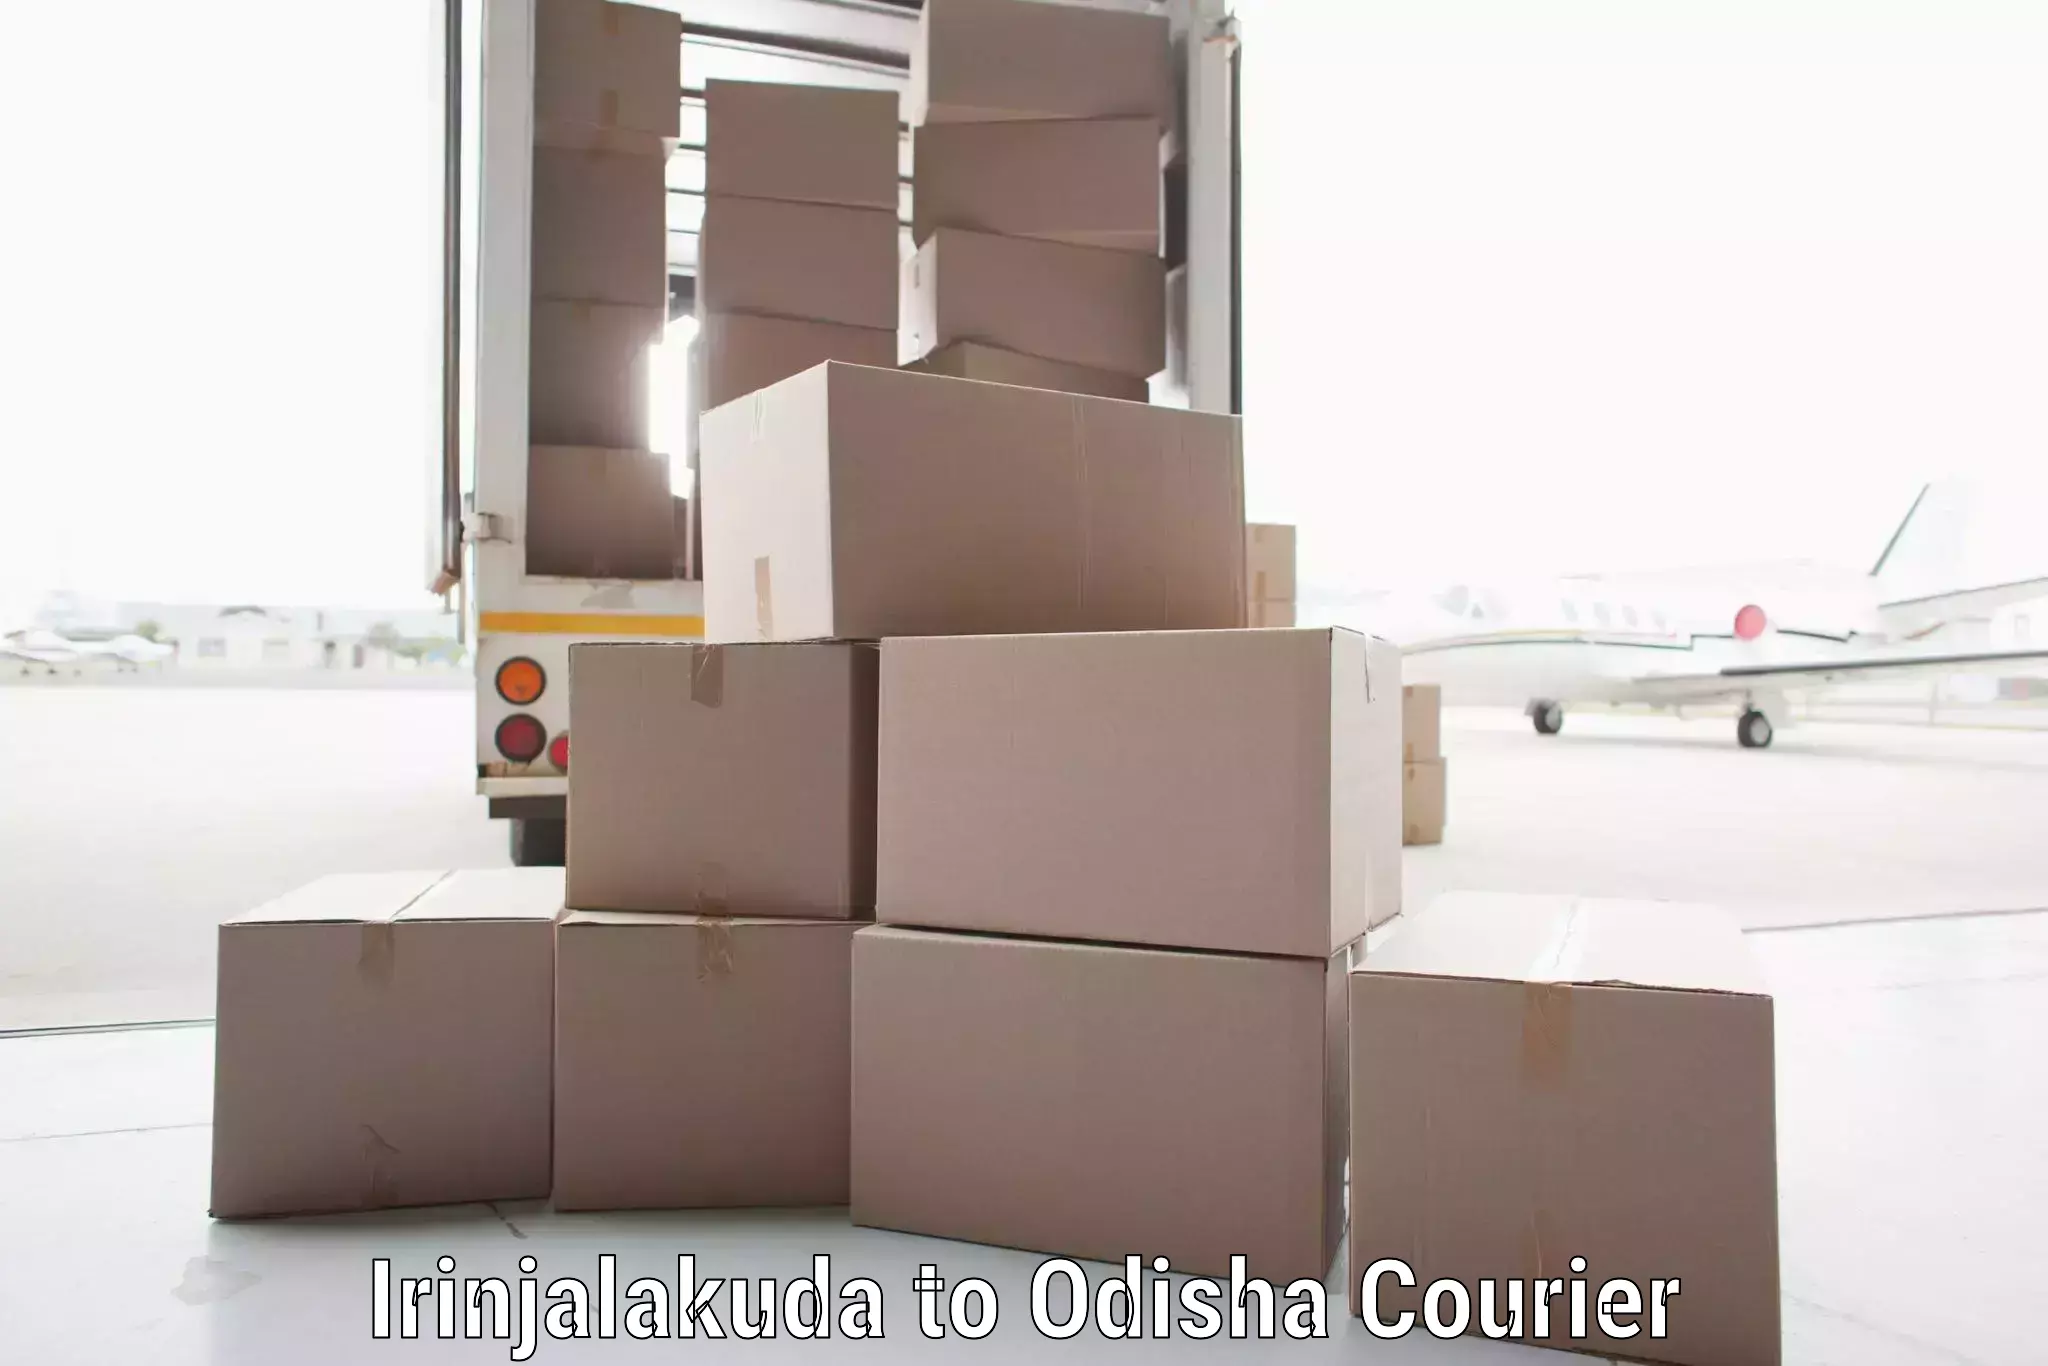 Customized shipping options Irinjalakuda to Mathili